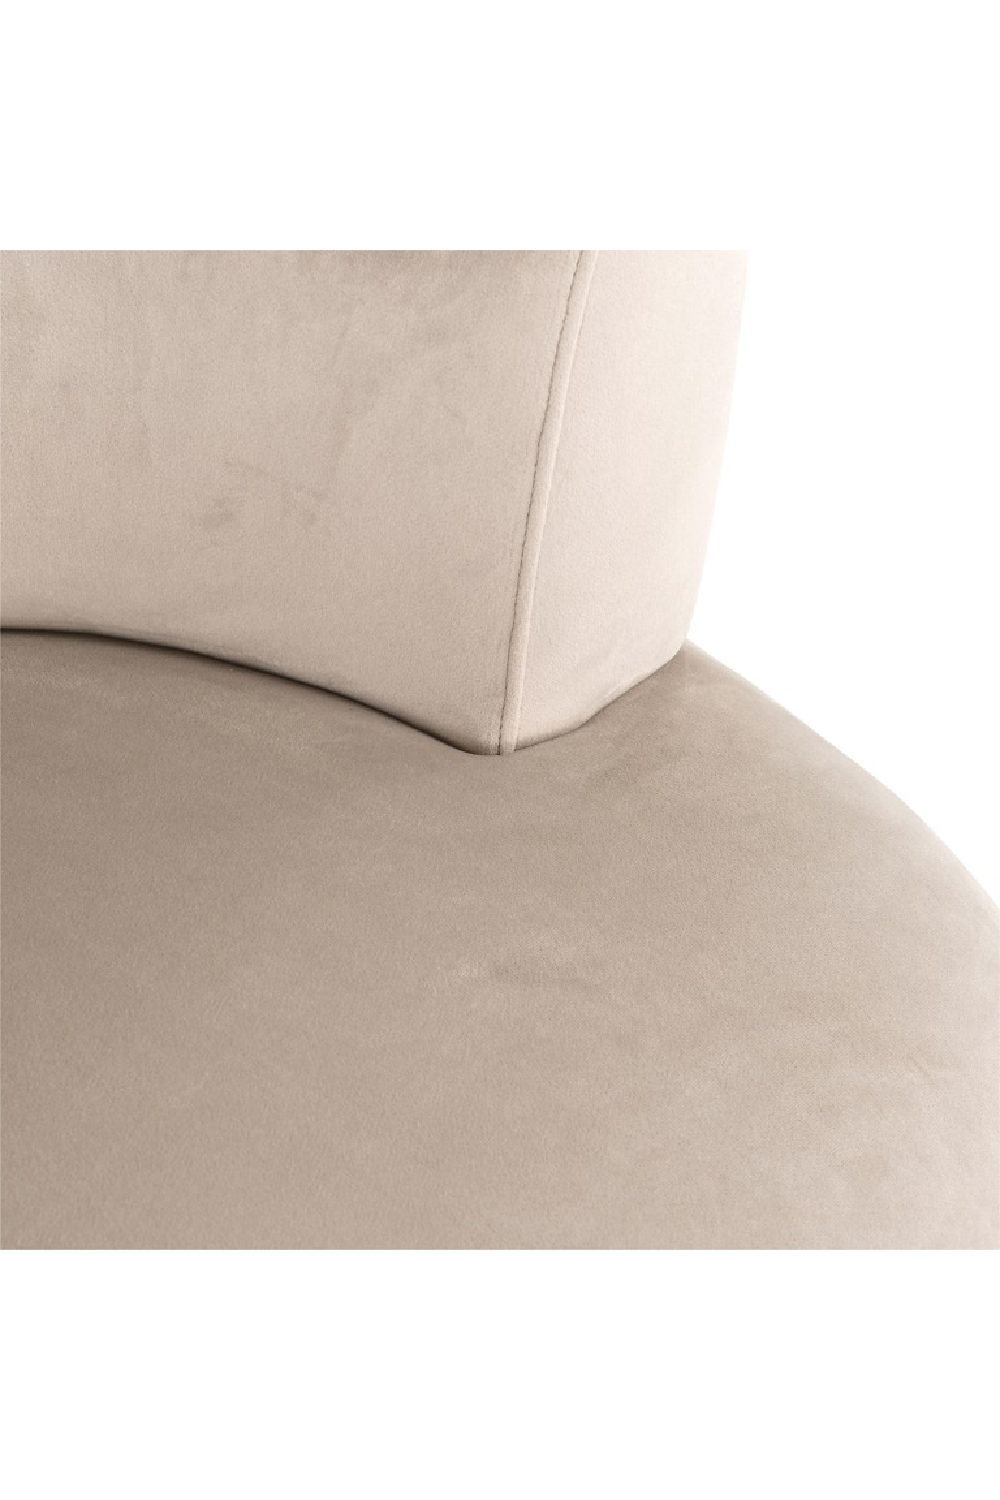 Modern Barrel Easy Chair | OROA Donna | Oroa.com